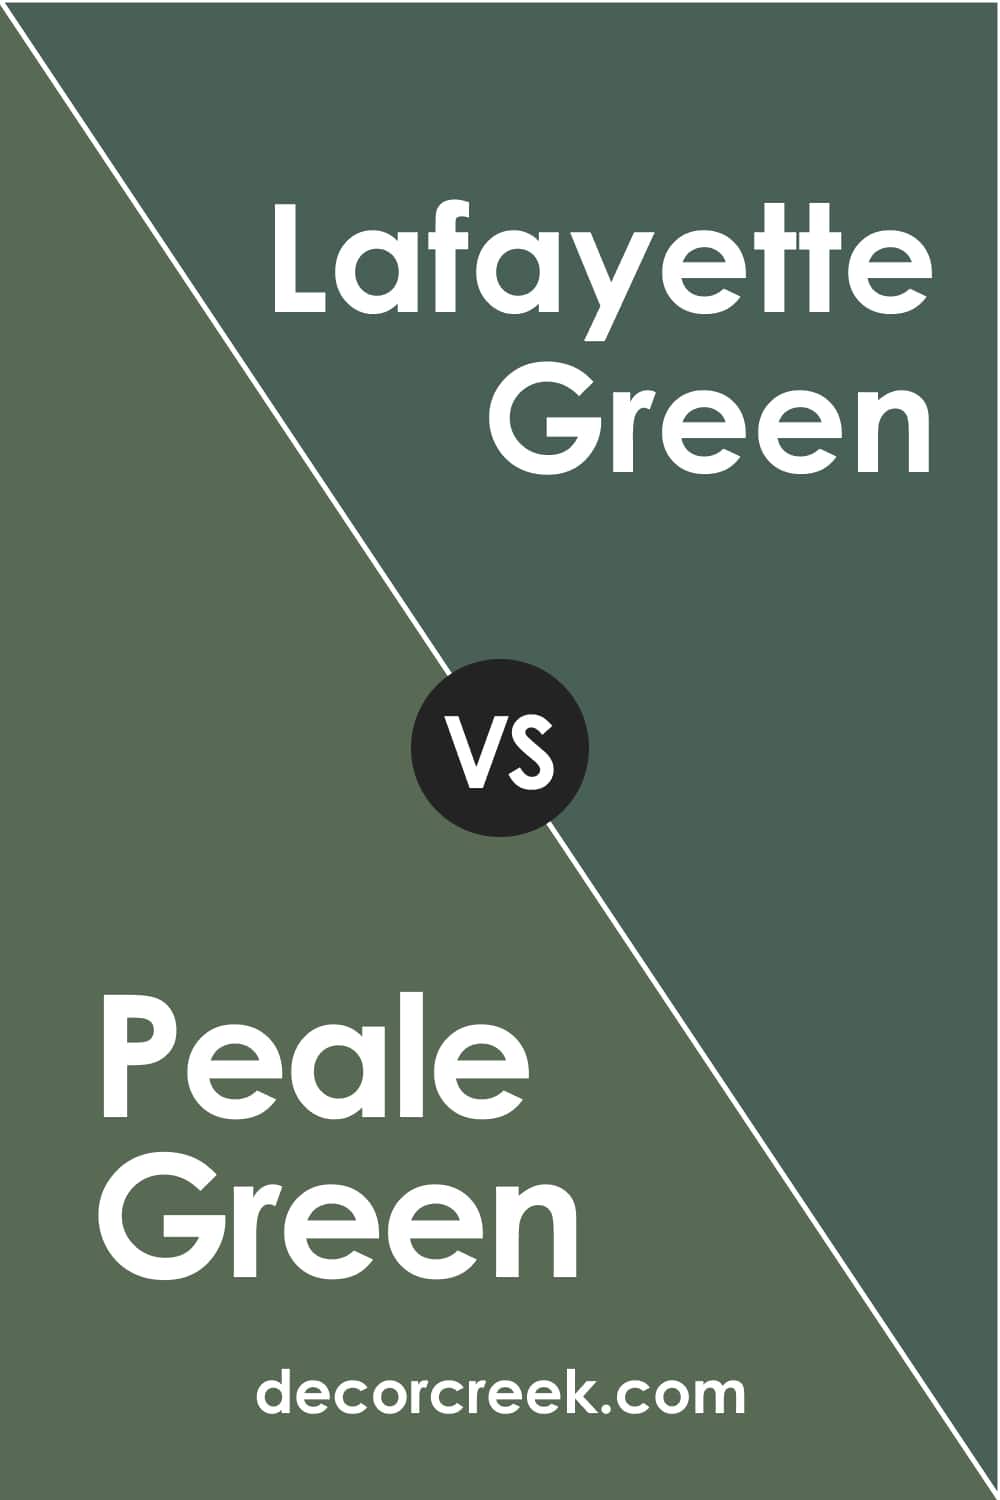 Peale Green vs Lafayette Green